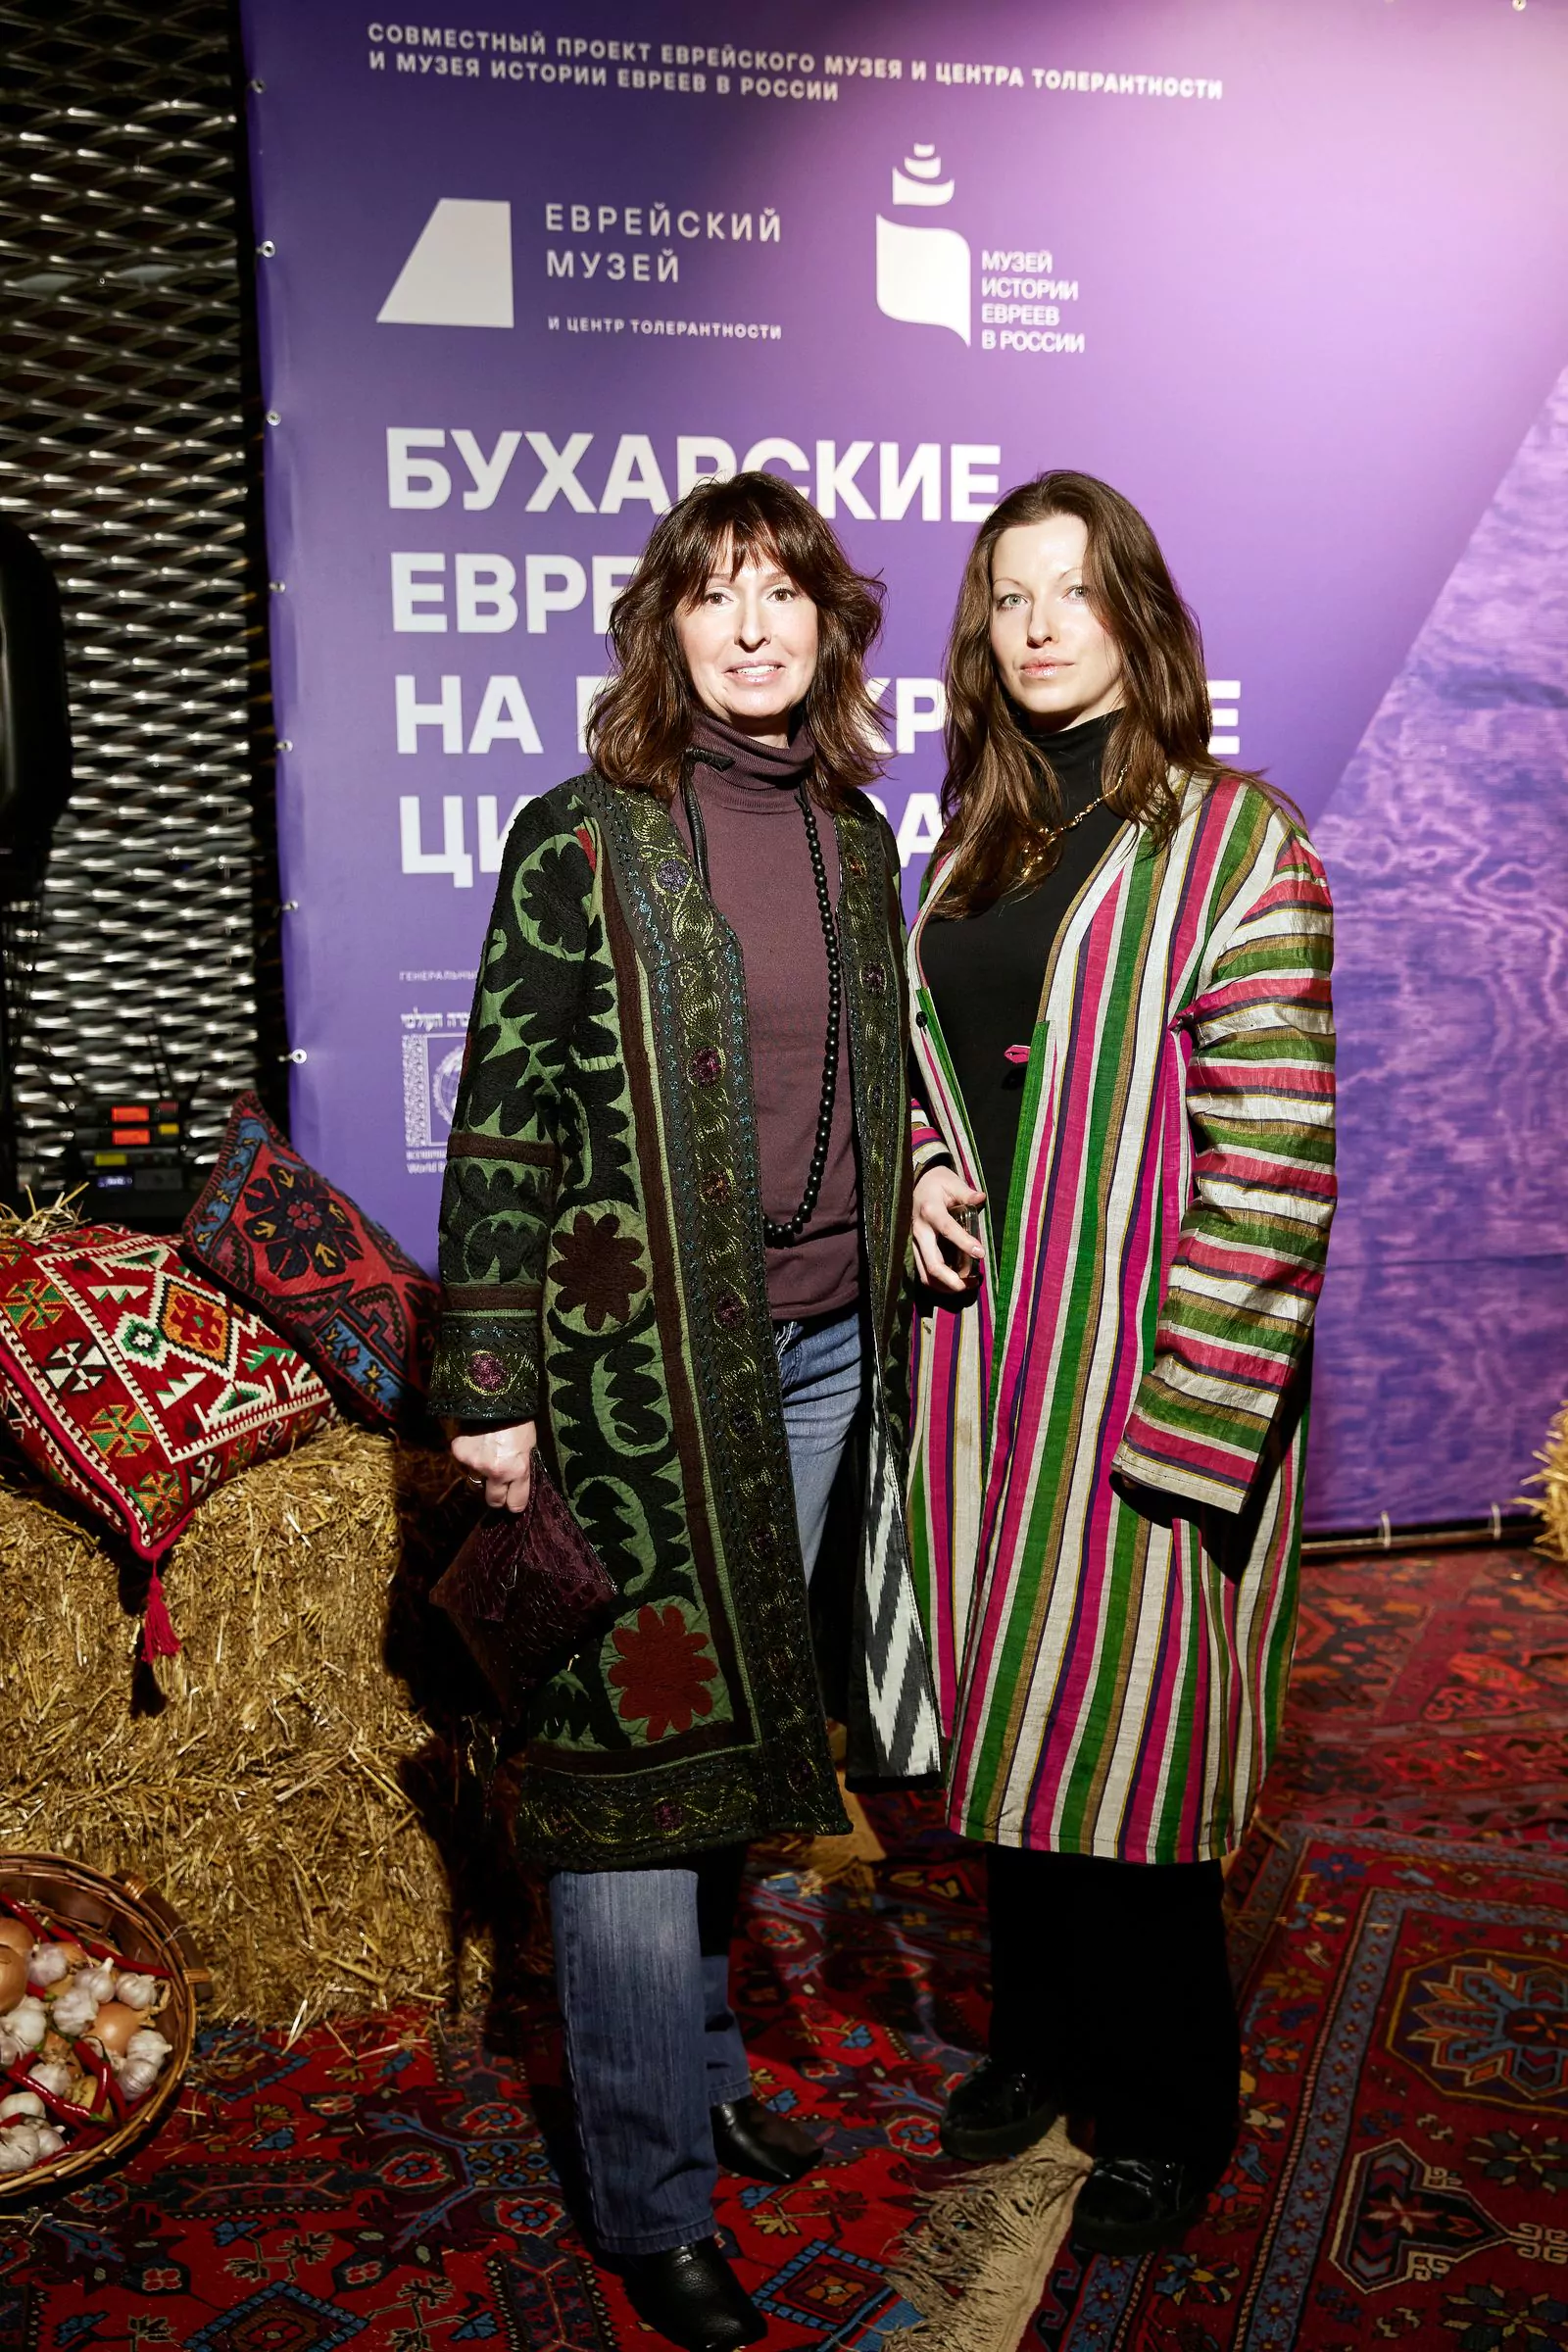 Марина Бусел с дочерью Марией на открытии выставки «Бухарские евреи: на перекрестке цивилизаций», 2 марта 2023 г.